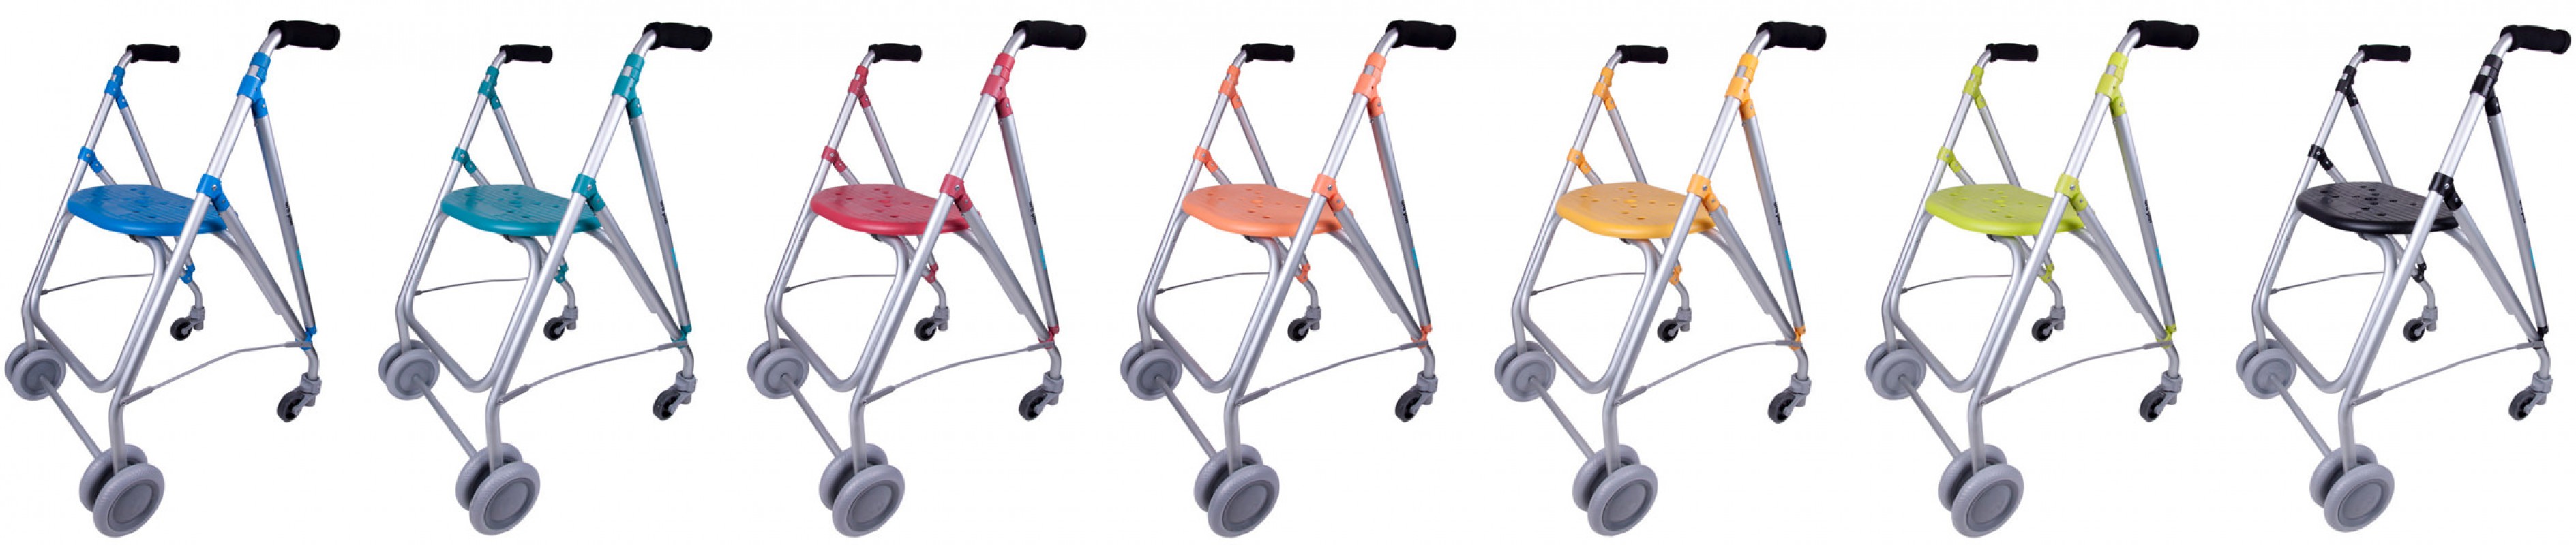 Forta Ara Plus 4-wheel walker